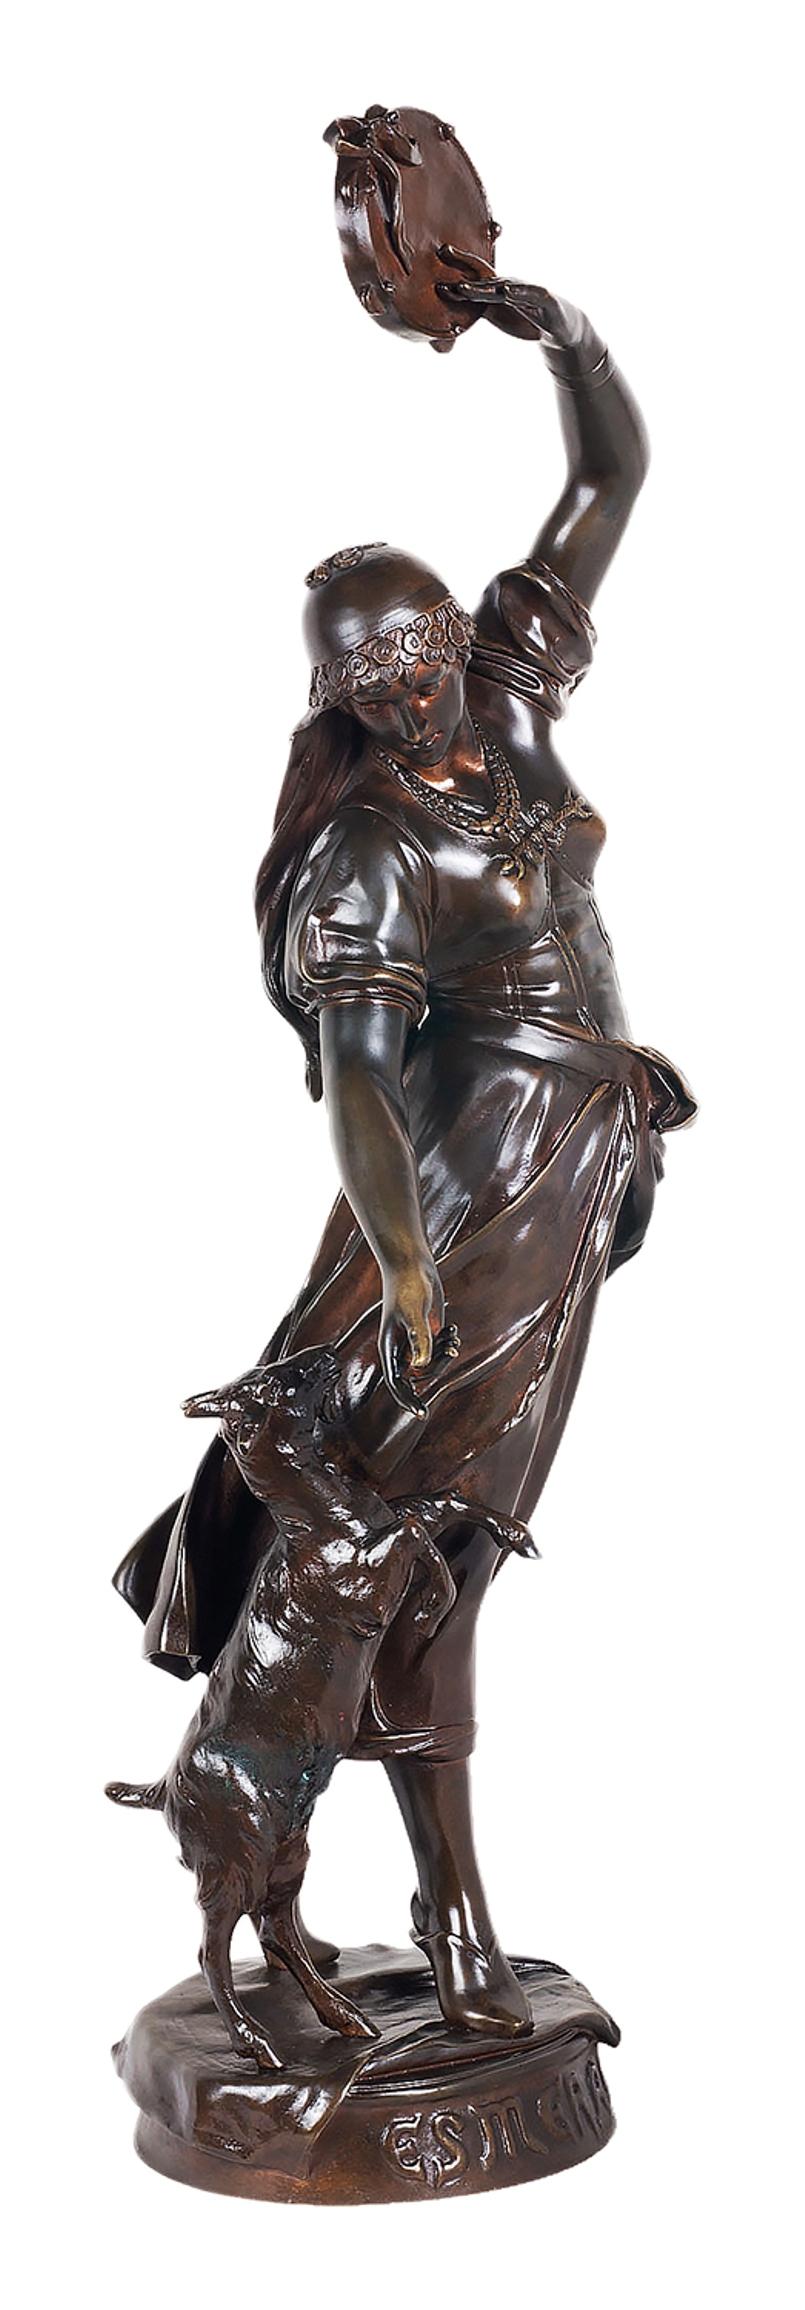 Statue d'Esmeralda en bronze patiné de belle qualité, datant du XIXe siècle.

Esmeralda, née Agnès, est un personnage fictif du roman de Victor Hugo Le Bossu de Notre-Dame (1831). C'est une Rom française. Elle attire constamment les hommes par ses